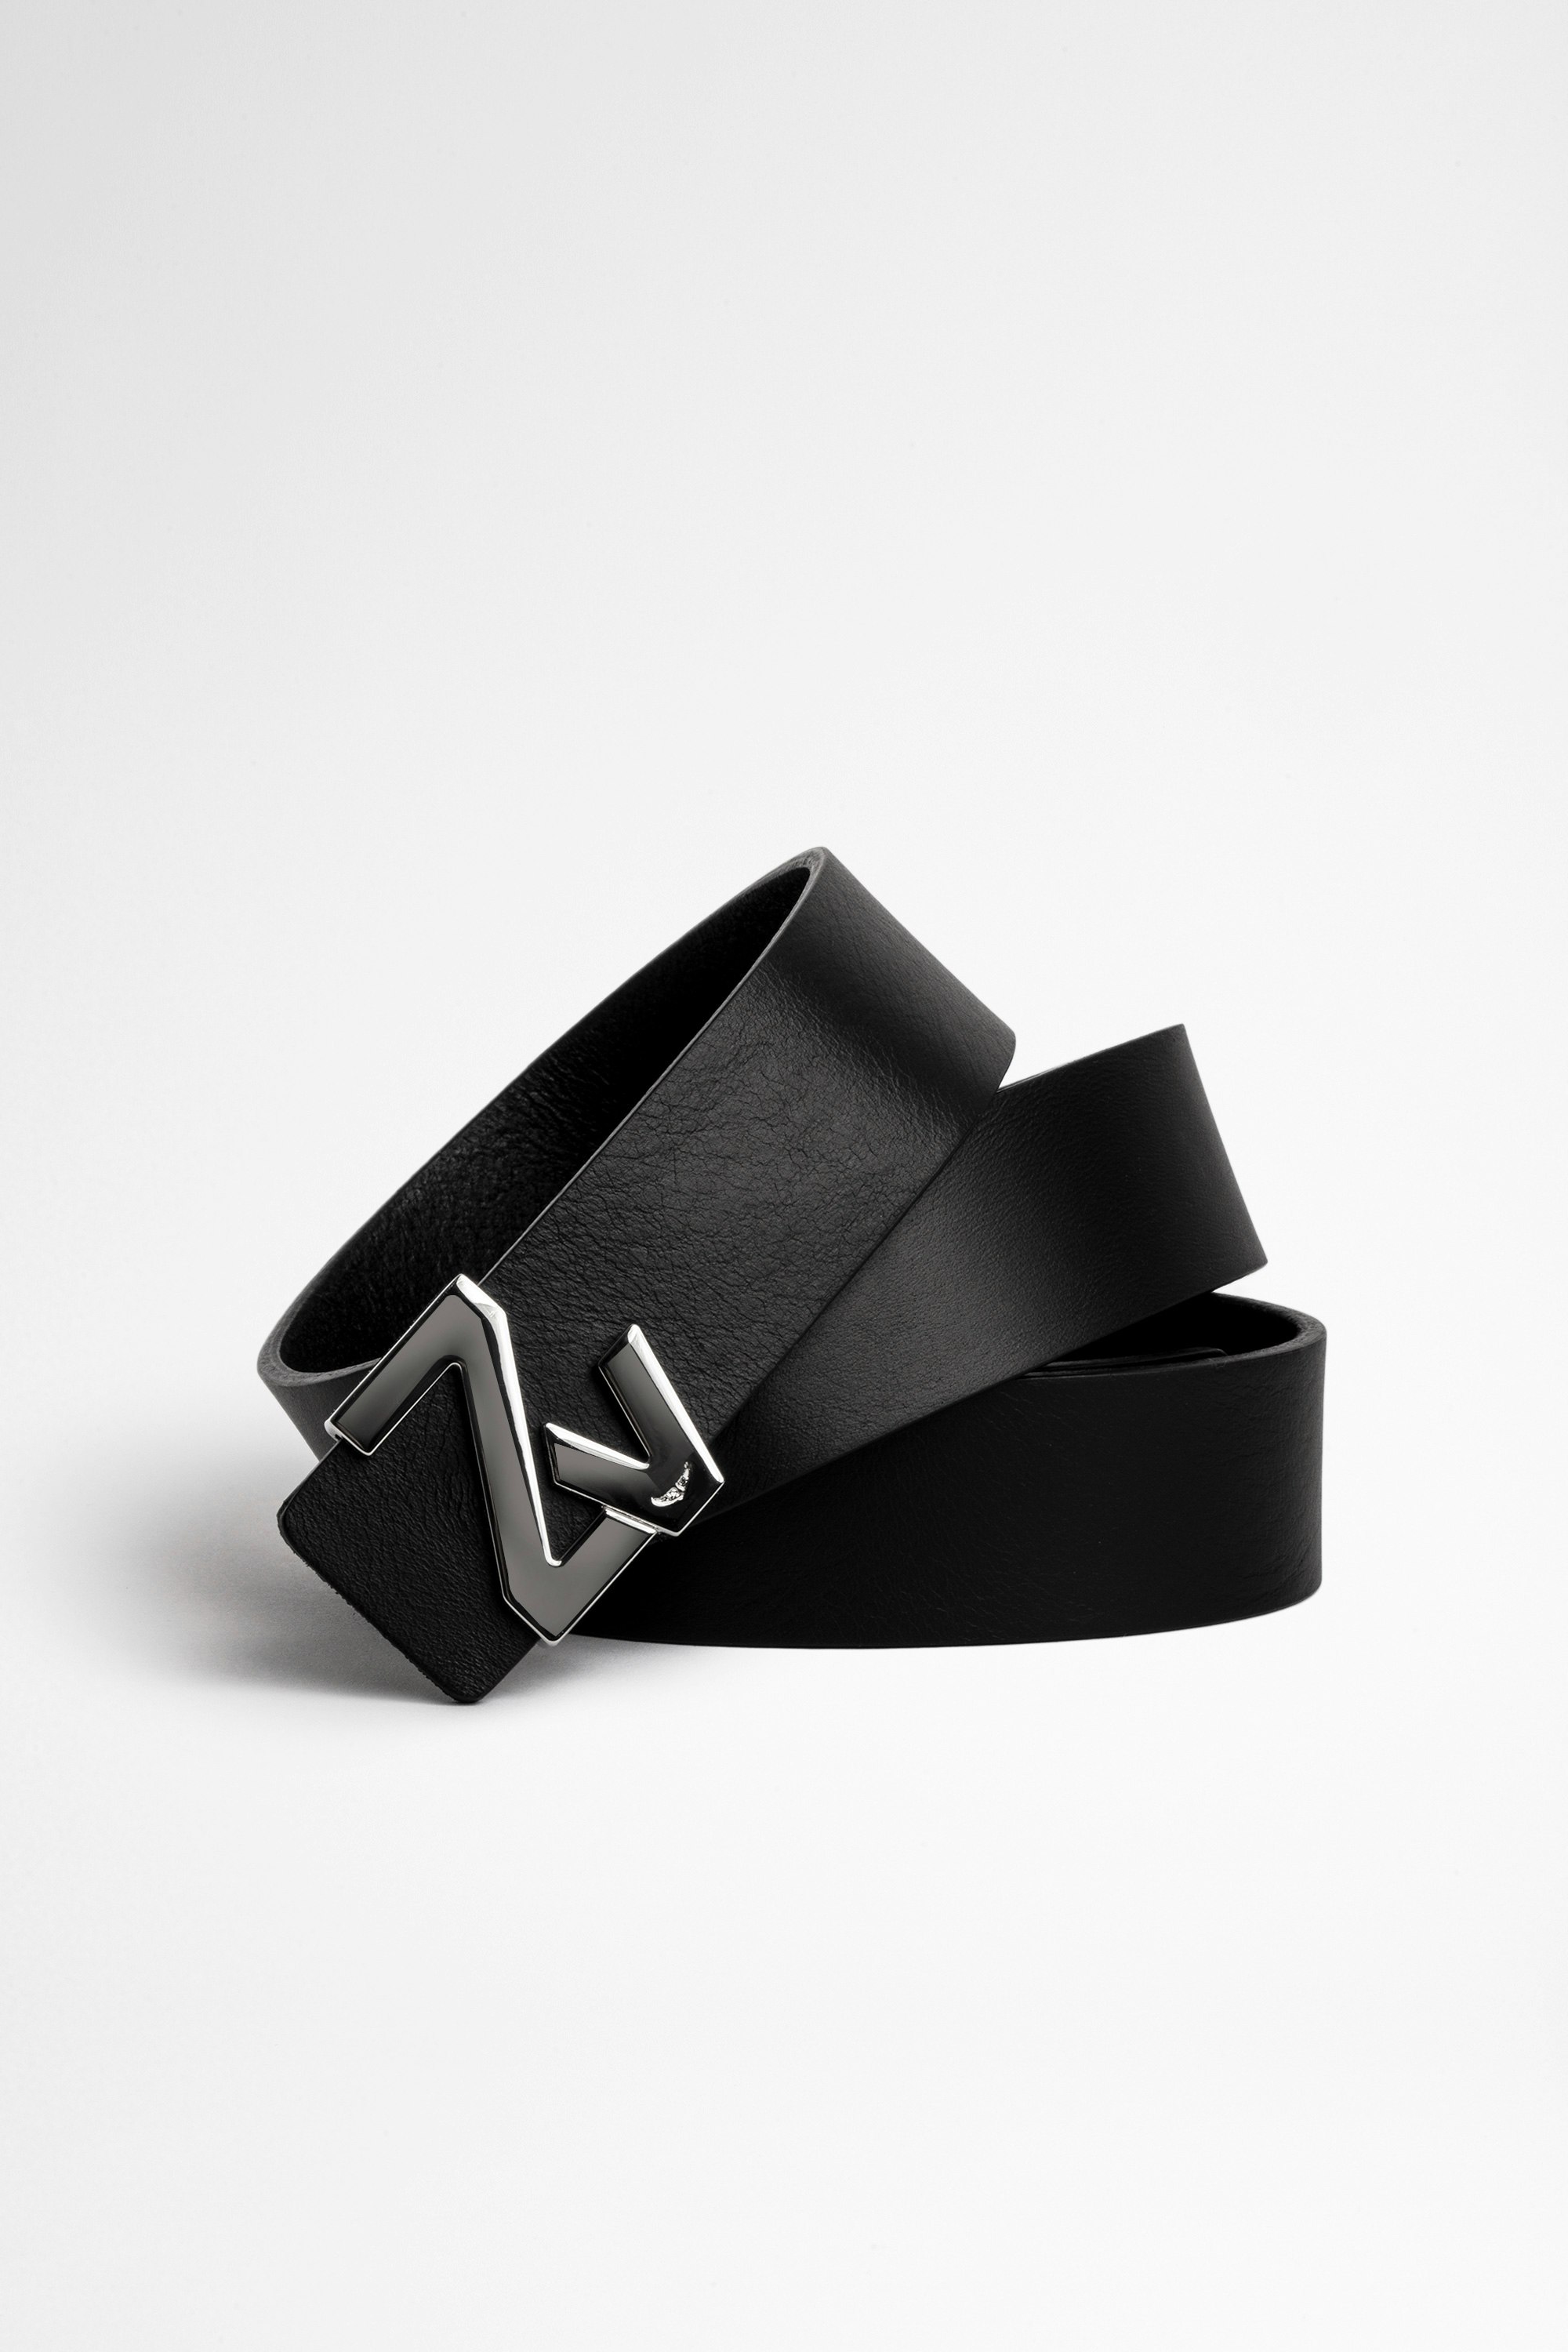 Cintura ZV Initiale La Belt Cintura in pelle nera con fibbia ZV argento, donna